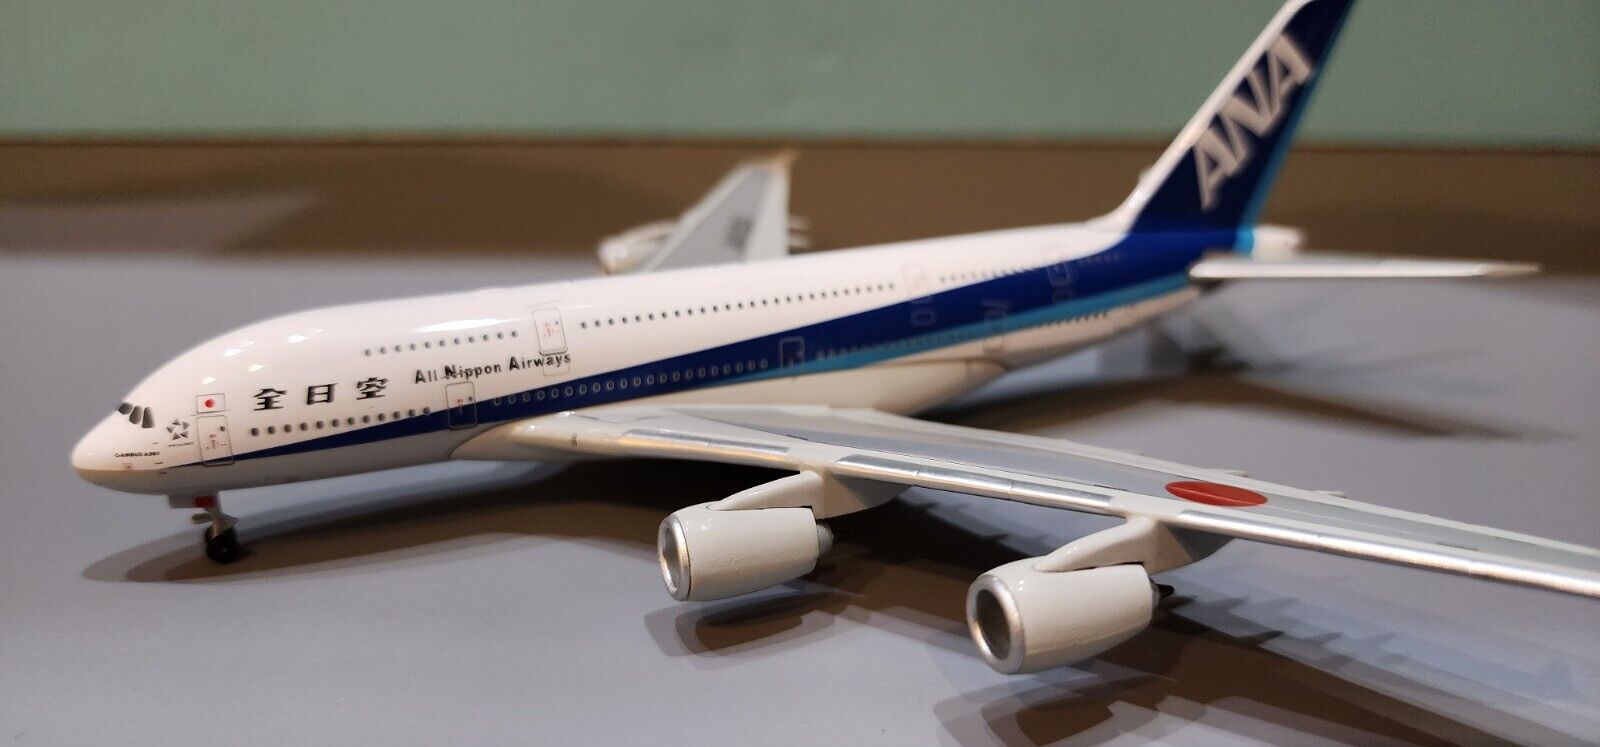 MAGIC MODELS ANA A380-800 \